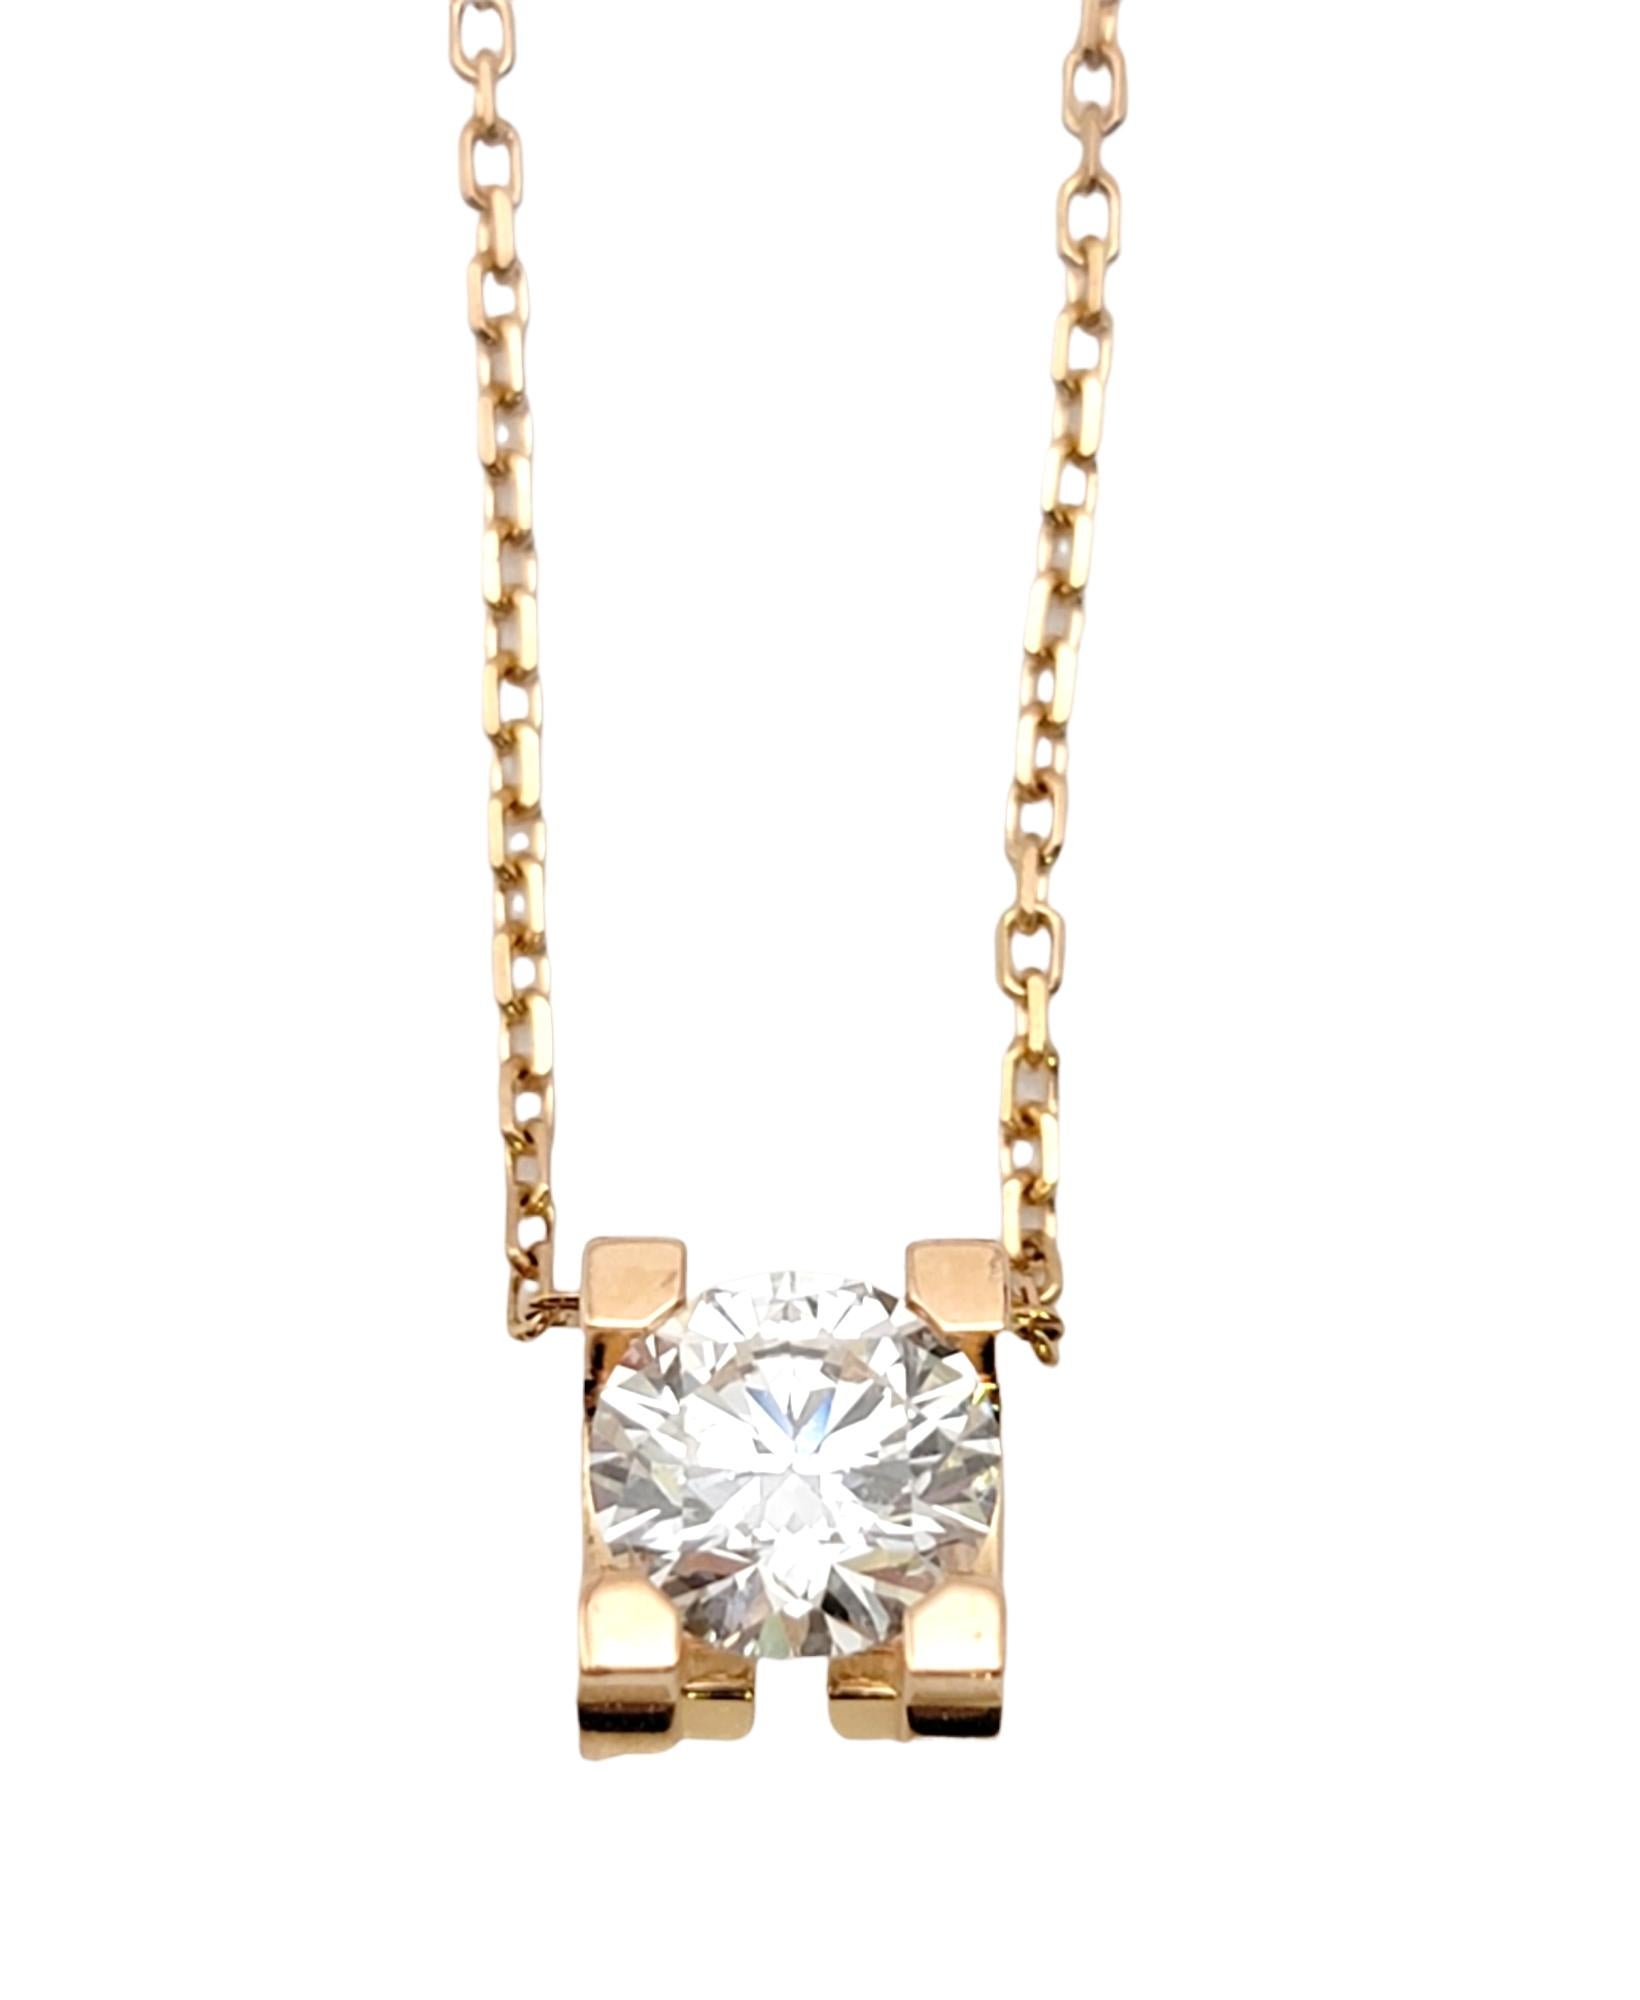 Ce superbe collier pendentif solitaire en diamants étincelants de Cartier est la quintessence de l'élégance discrète. Dotée d'une chaîne délicate et d'un diamant rond naturel solitaire serti de 4 griffes à l'extrémité de l'initiale 